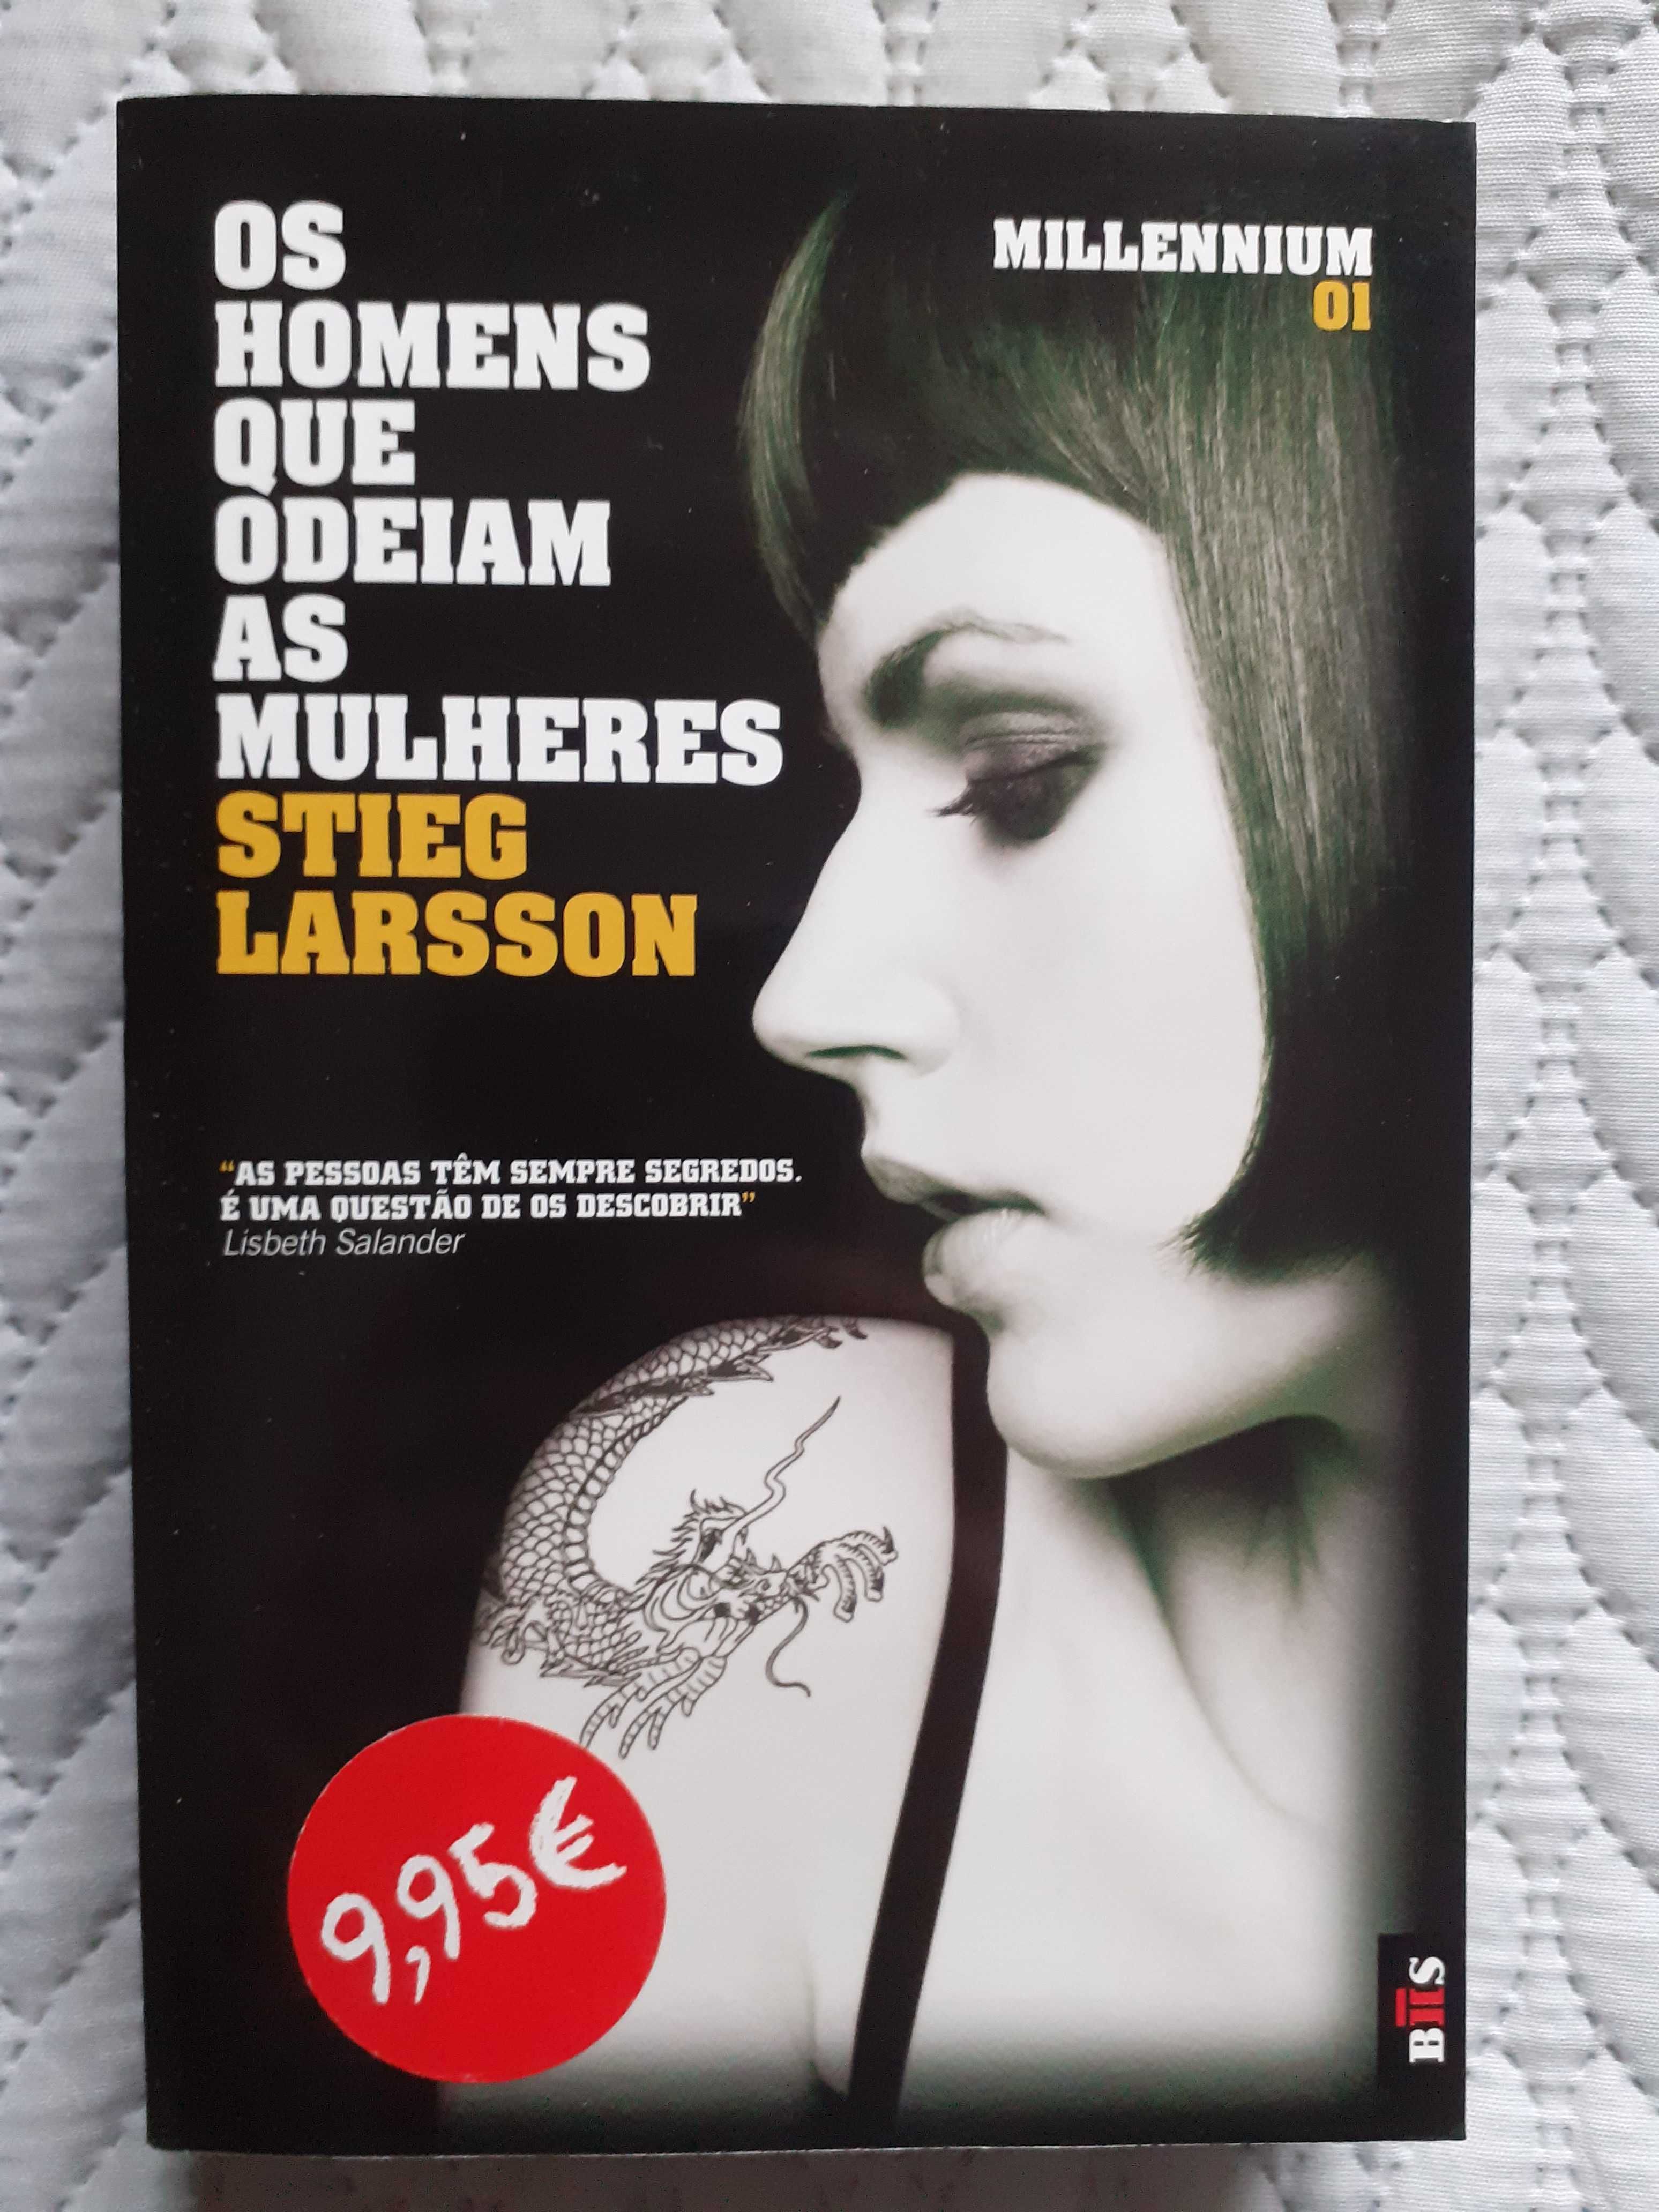 Stieg Larsson - Os Homens que Odeiam as Mulheres